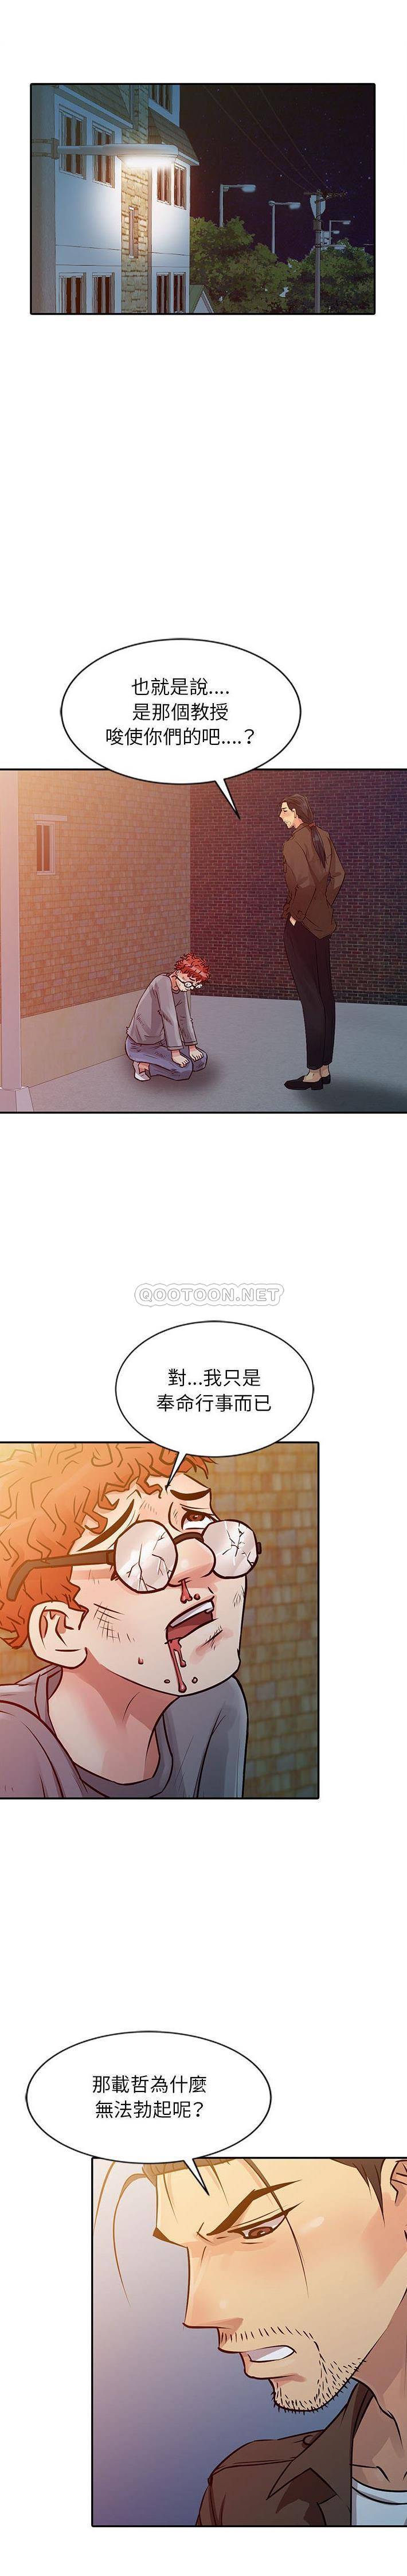 韩国污漫画 征服的滋味 第10话 14